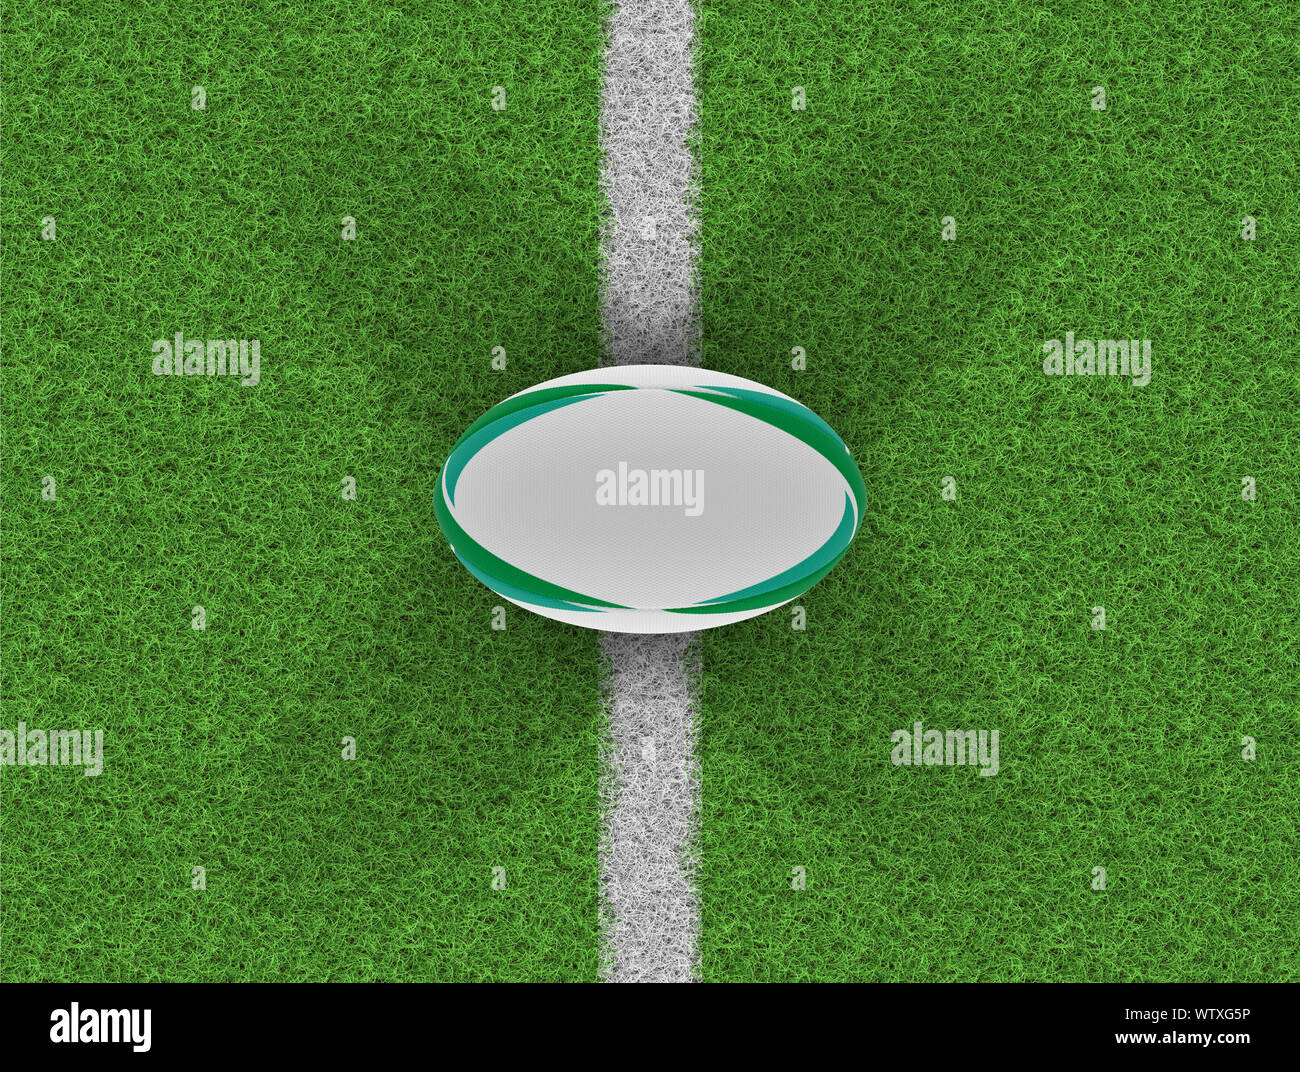 Una vista superior de un balón de rugby con textura blanca con elementos de diseño verde sobre un césped con marcas - 3D Render Foto de stock